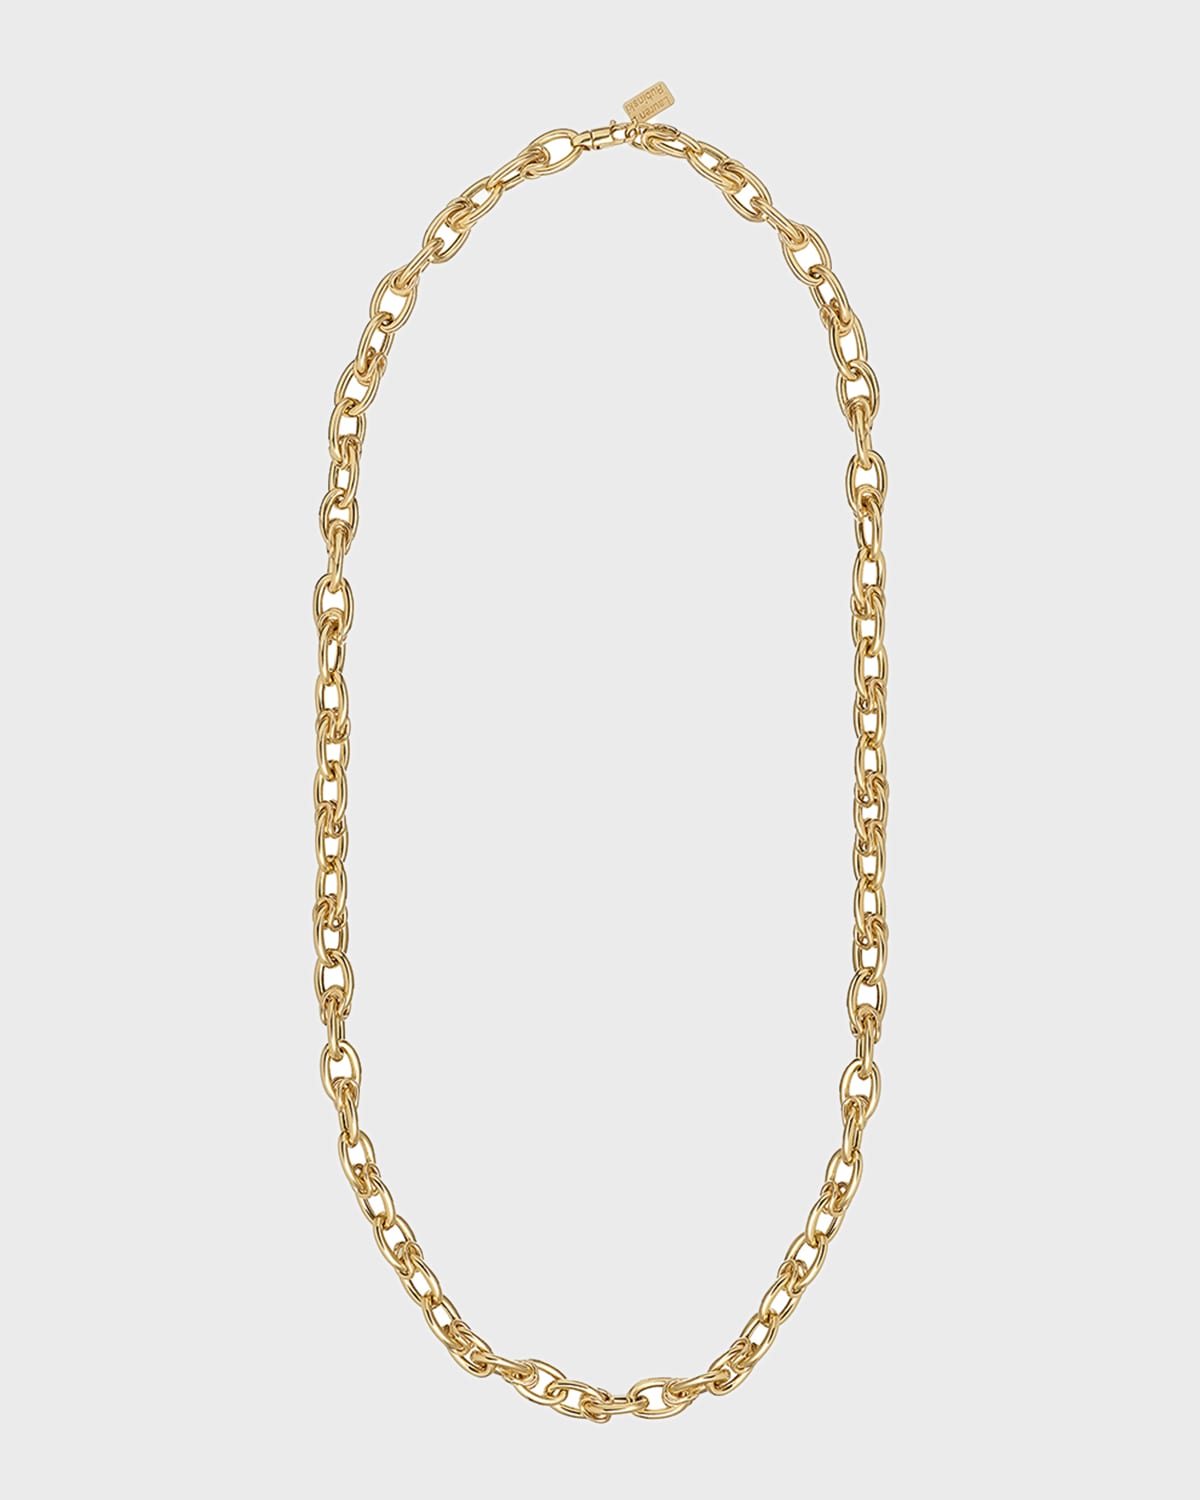 Lauren Rubinski 14k Long Chain Necklace, 36"l